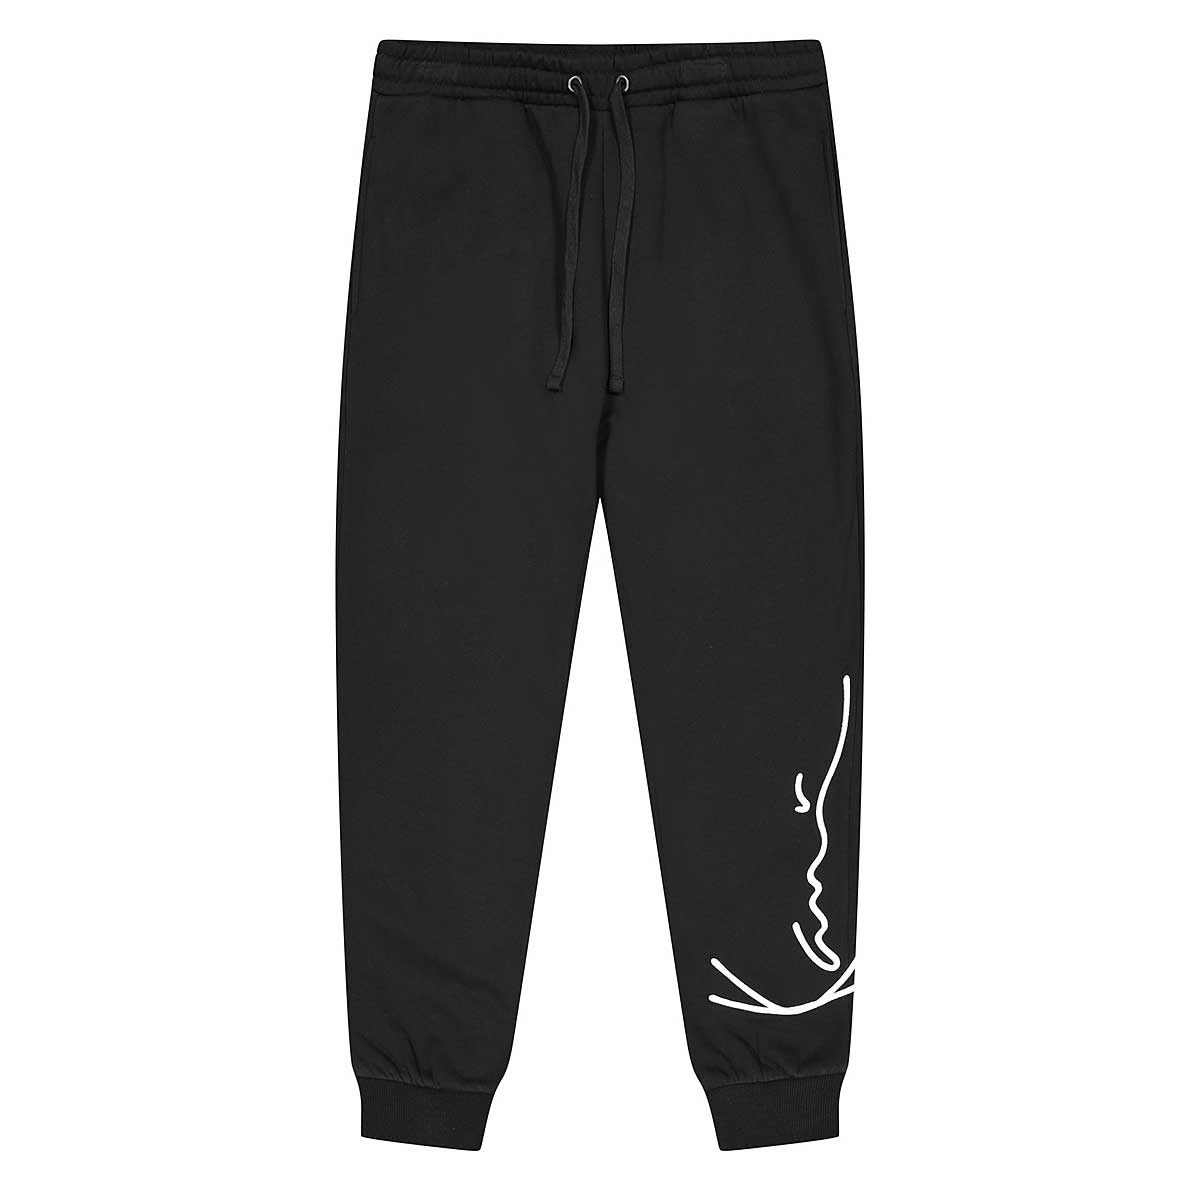 Karl Kani Signature Retro Sweatpants, Black/White